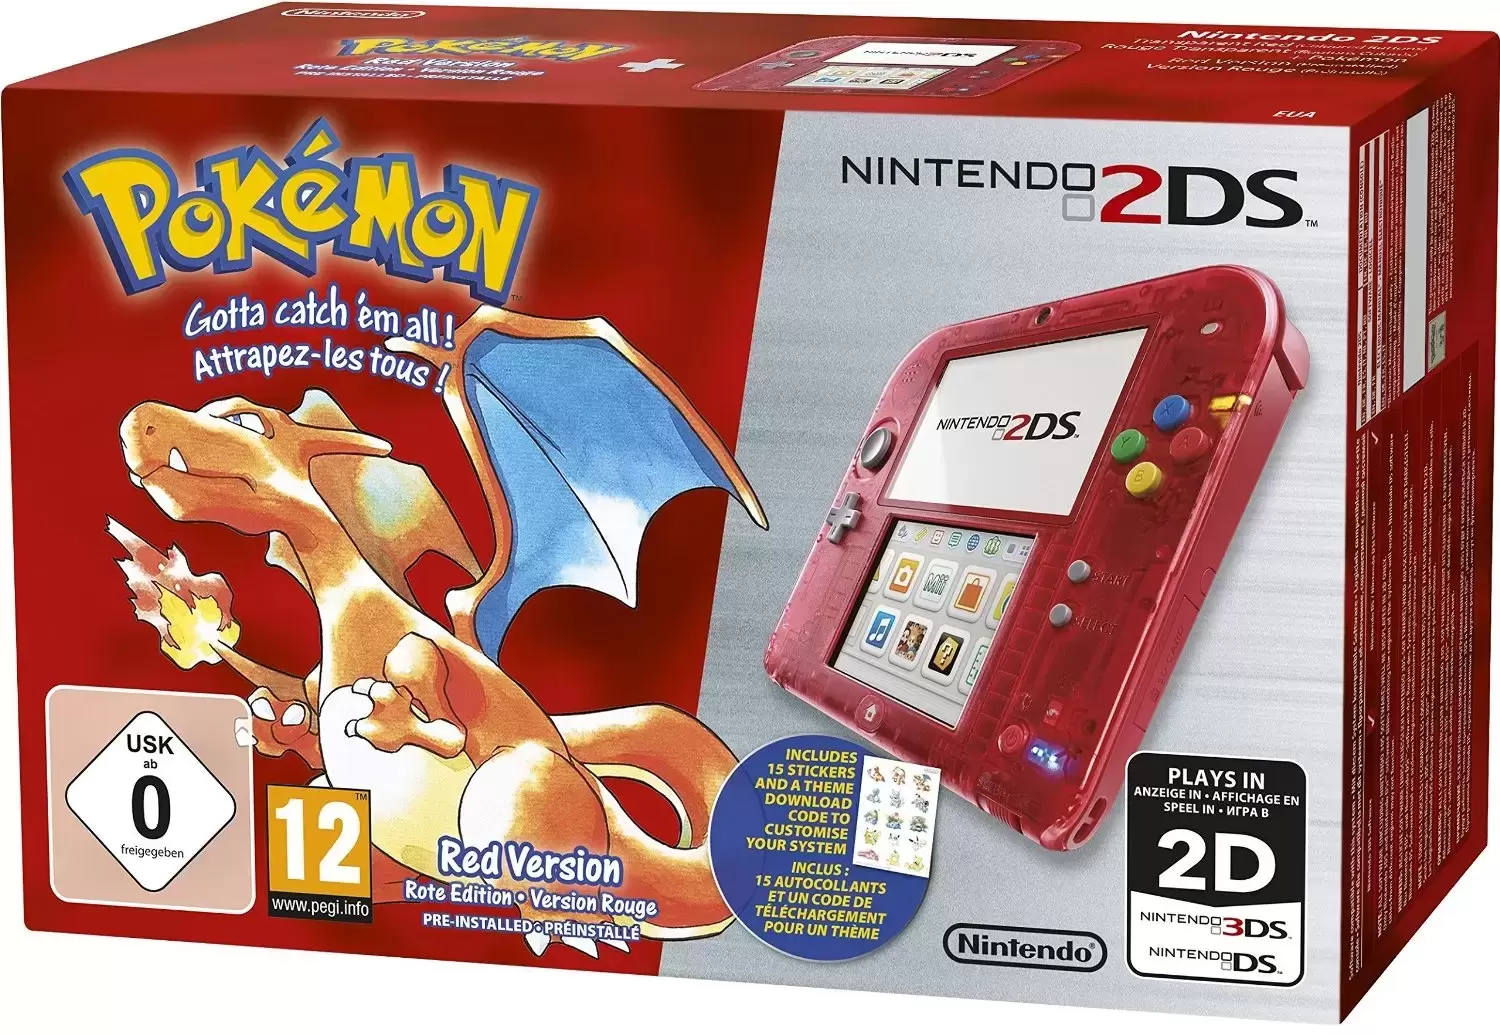 Matériel Nintendo 2DS - Nintendo 2DS Pokémon Version Rouge - Nintendo 2DS